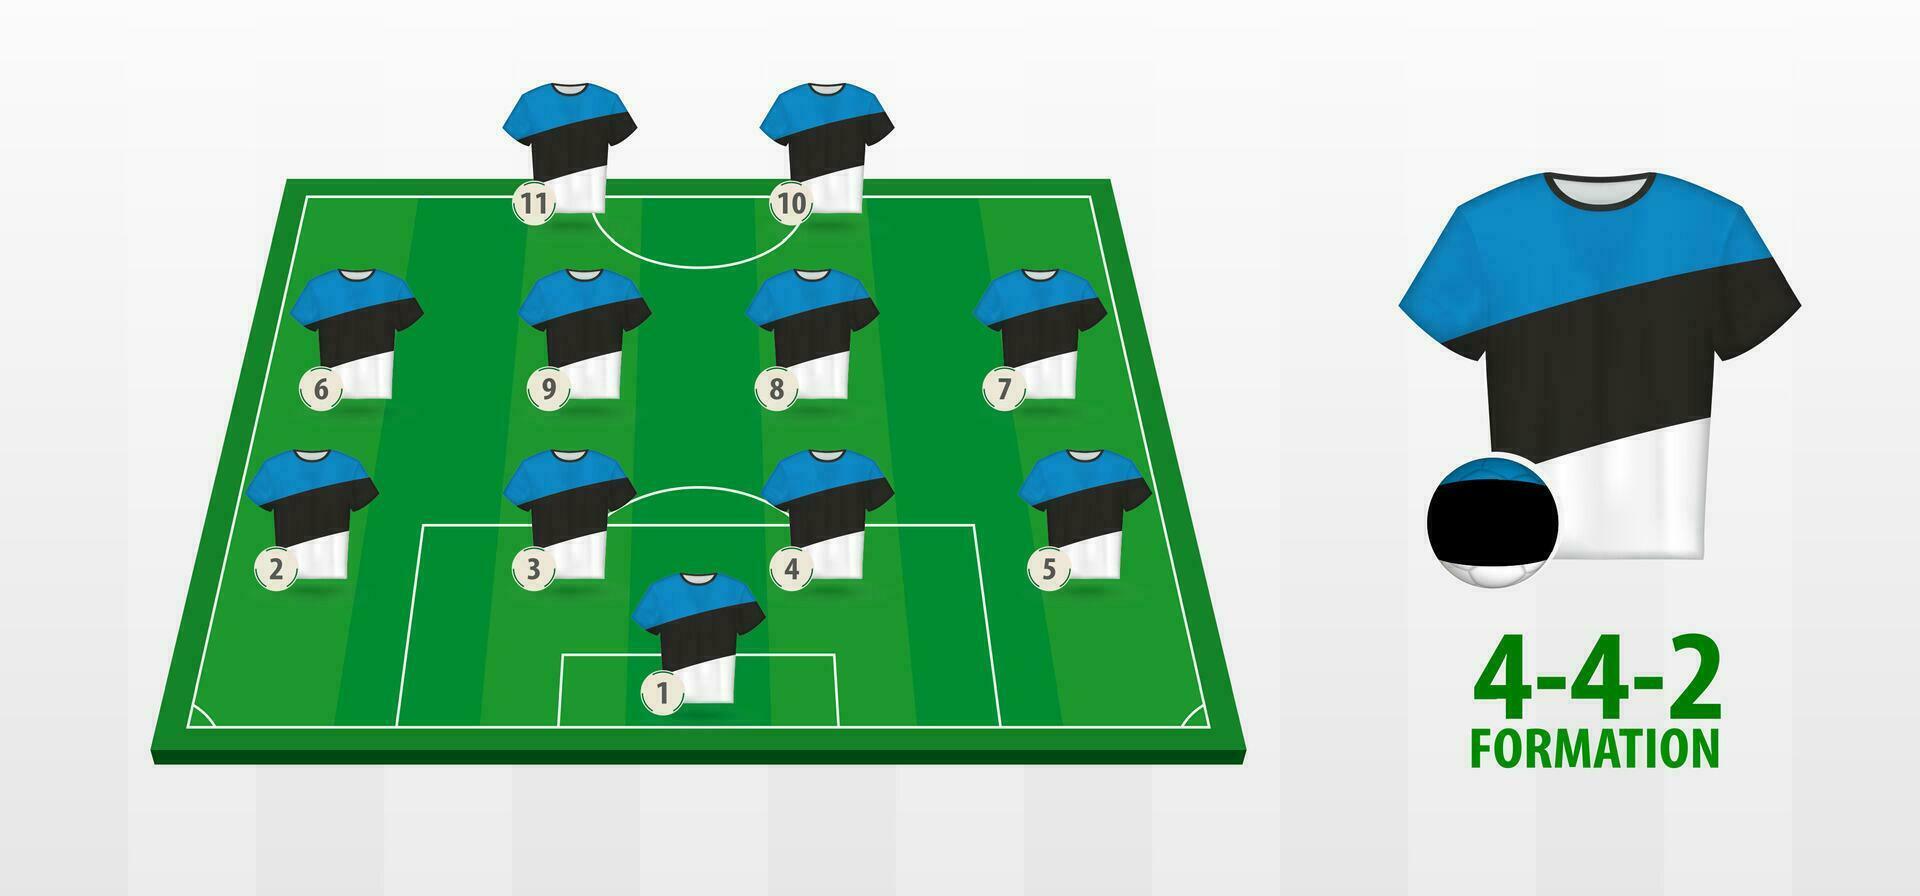 Estonia National Football Team Formation on Football Field. vector